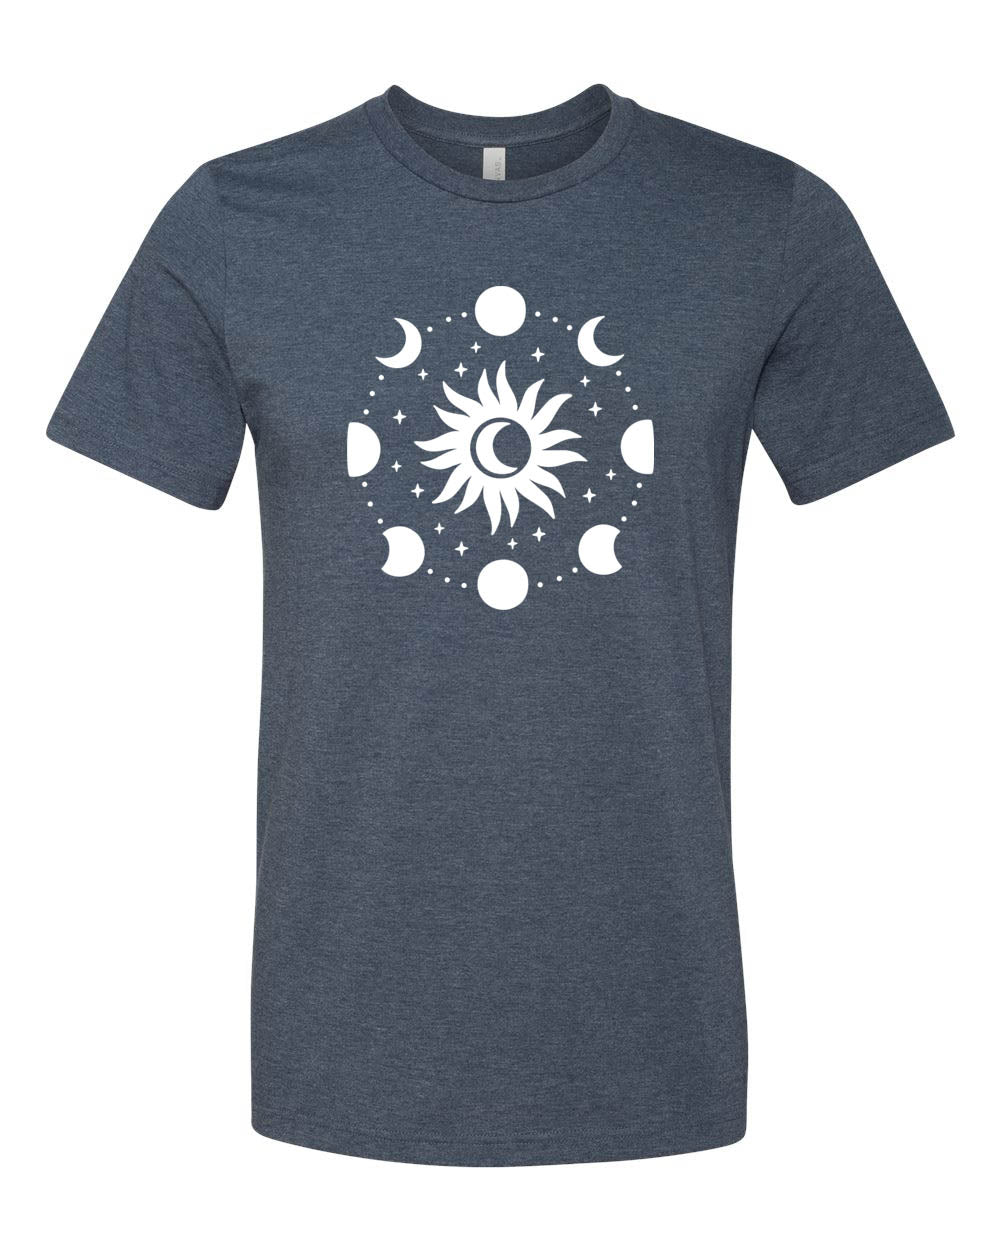 Moon Design 3 T-Shirt